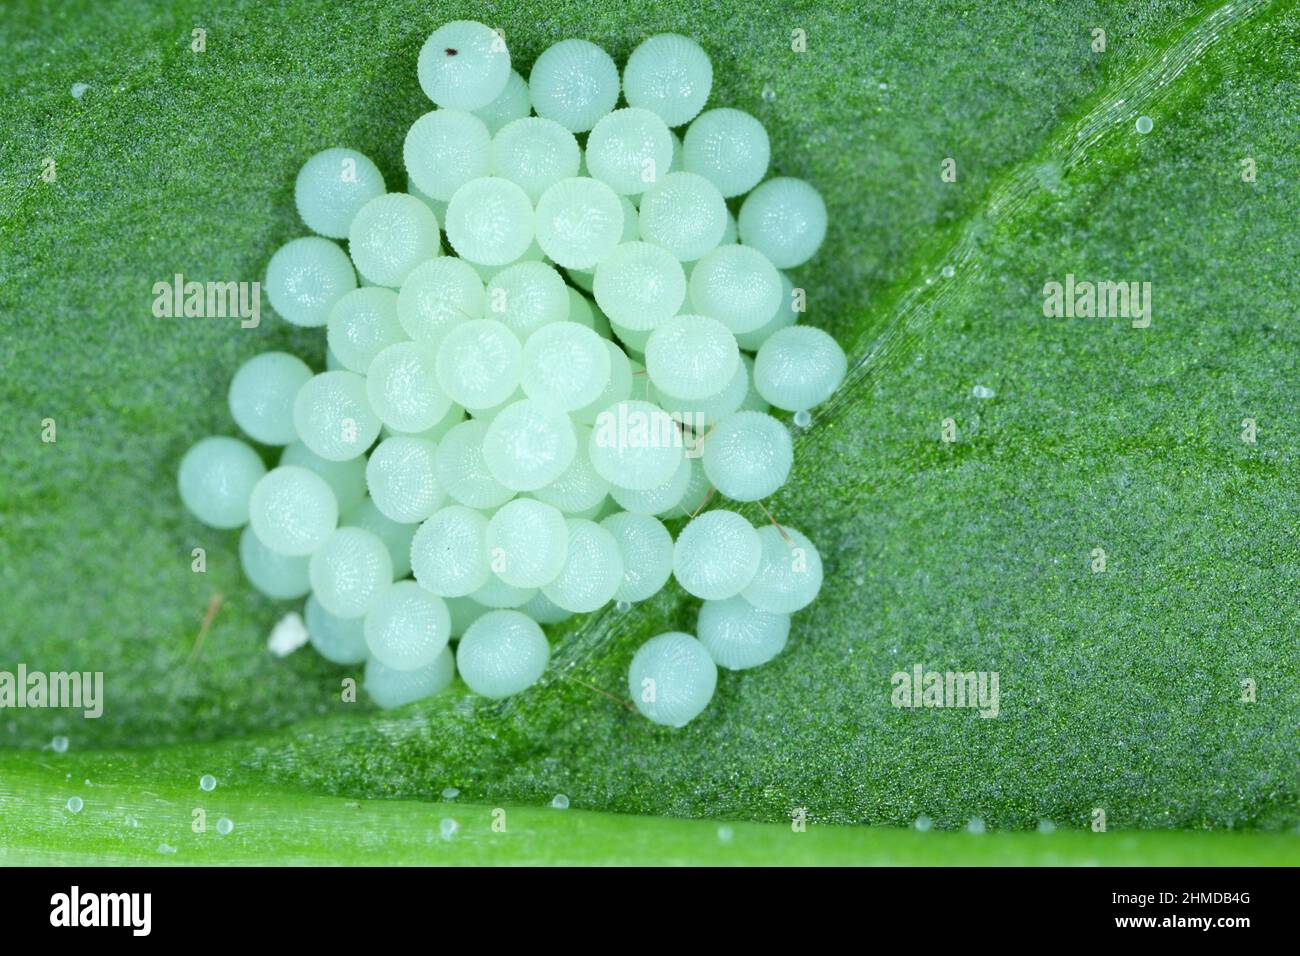 Cluster of moth eggs on underside of sugar beet leaf. Stock Photo